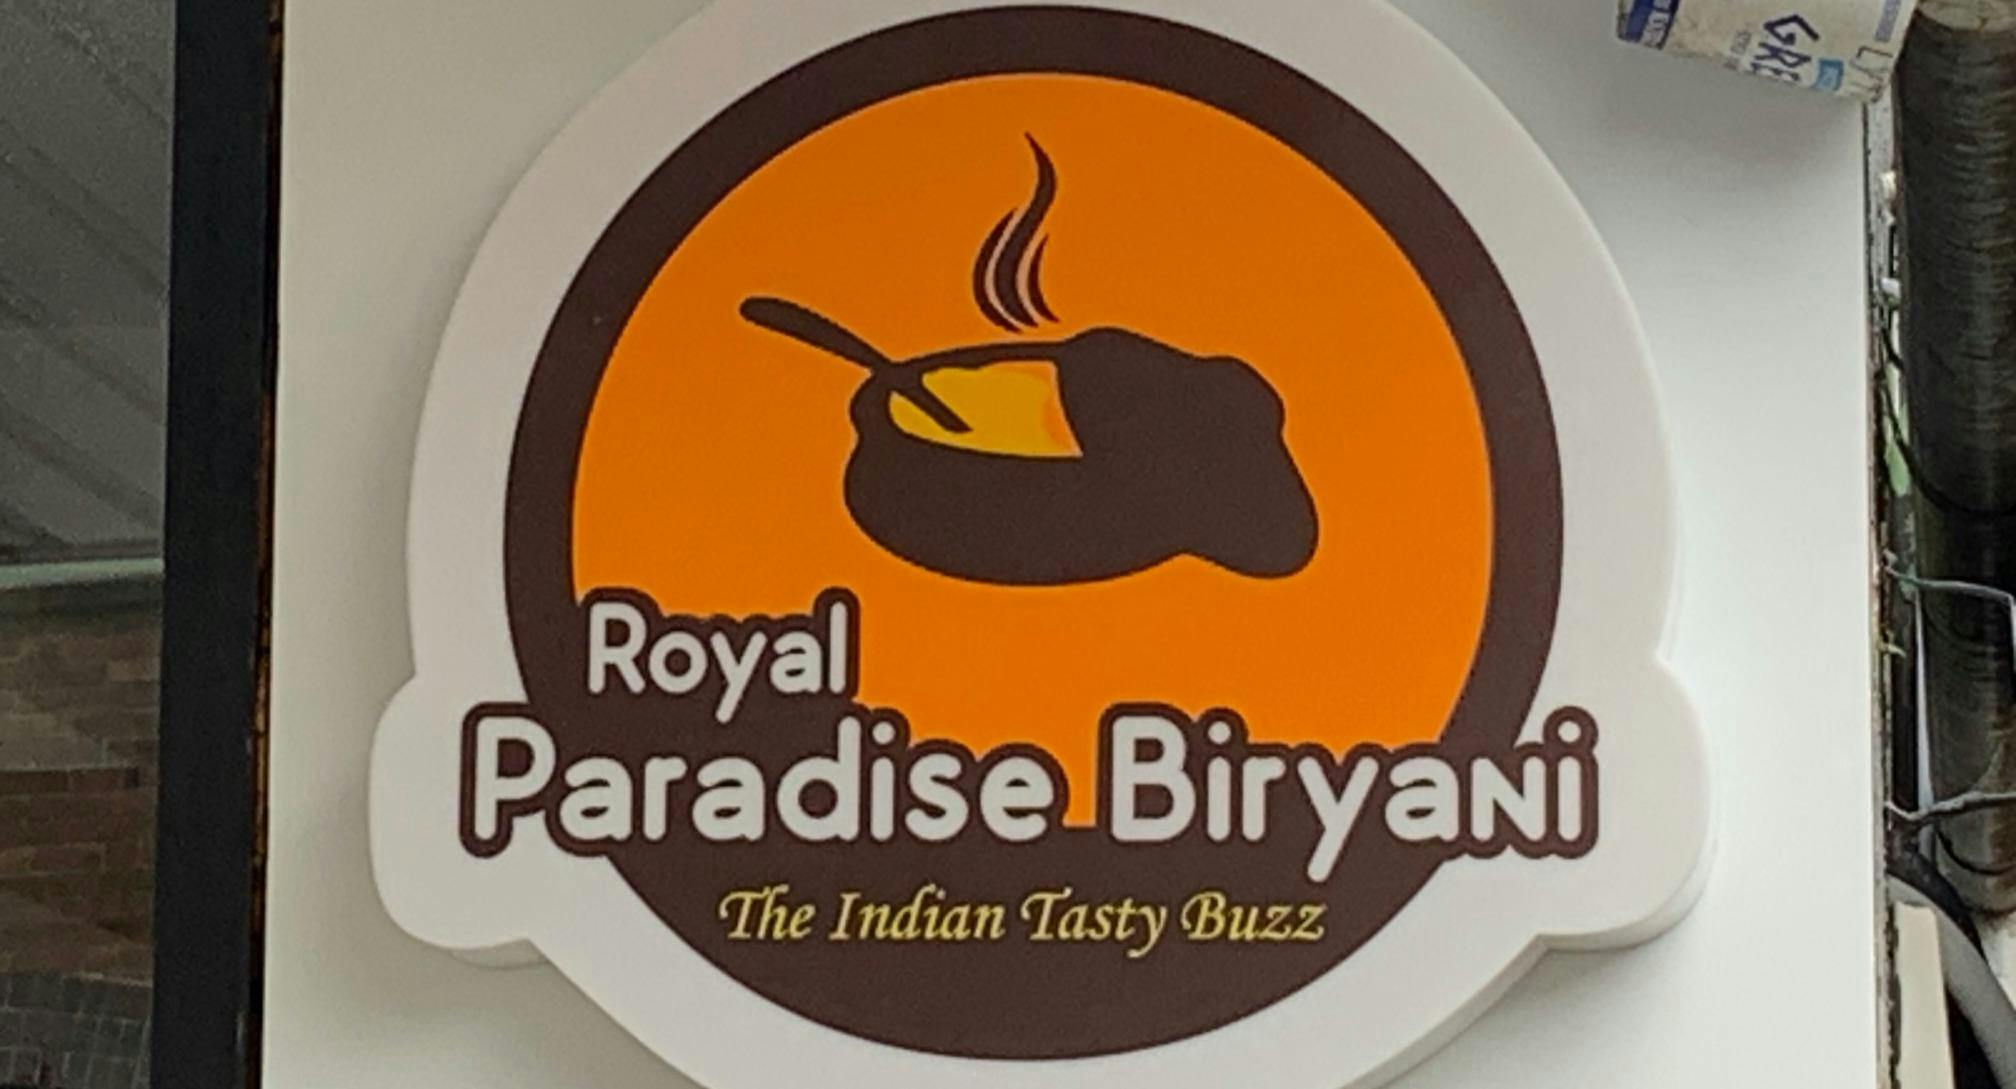 Photo of restaurant Royal Paradise Biryani in North Strathfield, Sydney